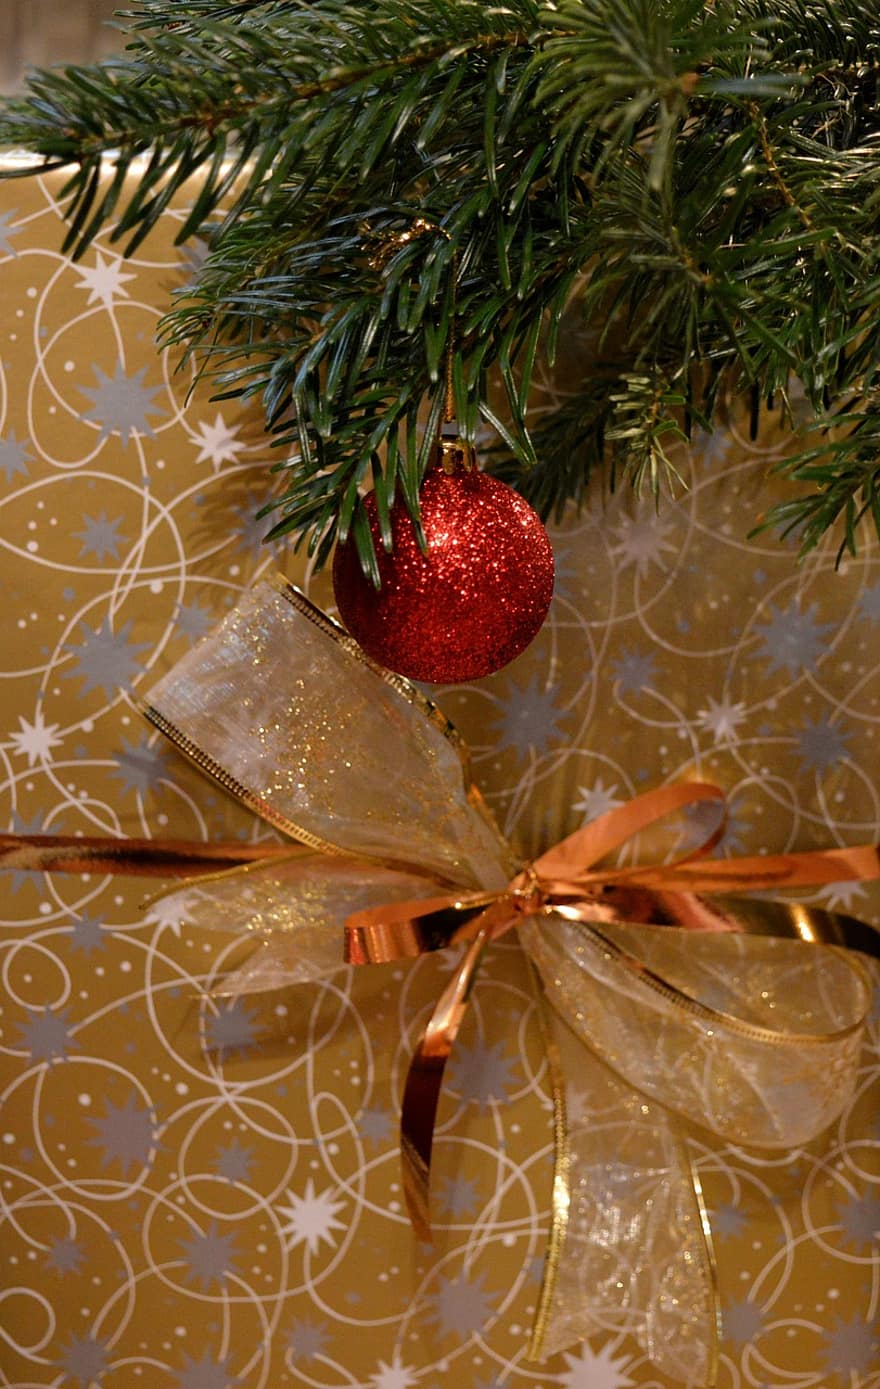 motivo natalizio, pallina rossa, rami di abete, Natale, umore natalizio, decorazioni per alberi di Natale, decorazione natalizia, regalo di Natale, regalo, periodo natalizio, La mia stagione delle feste